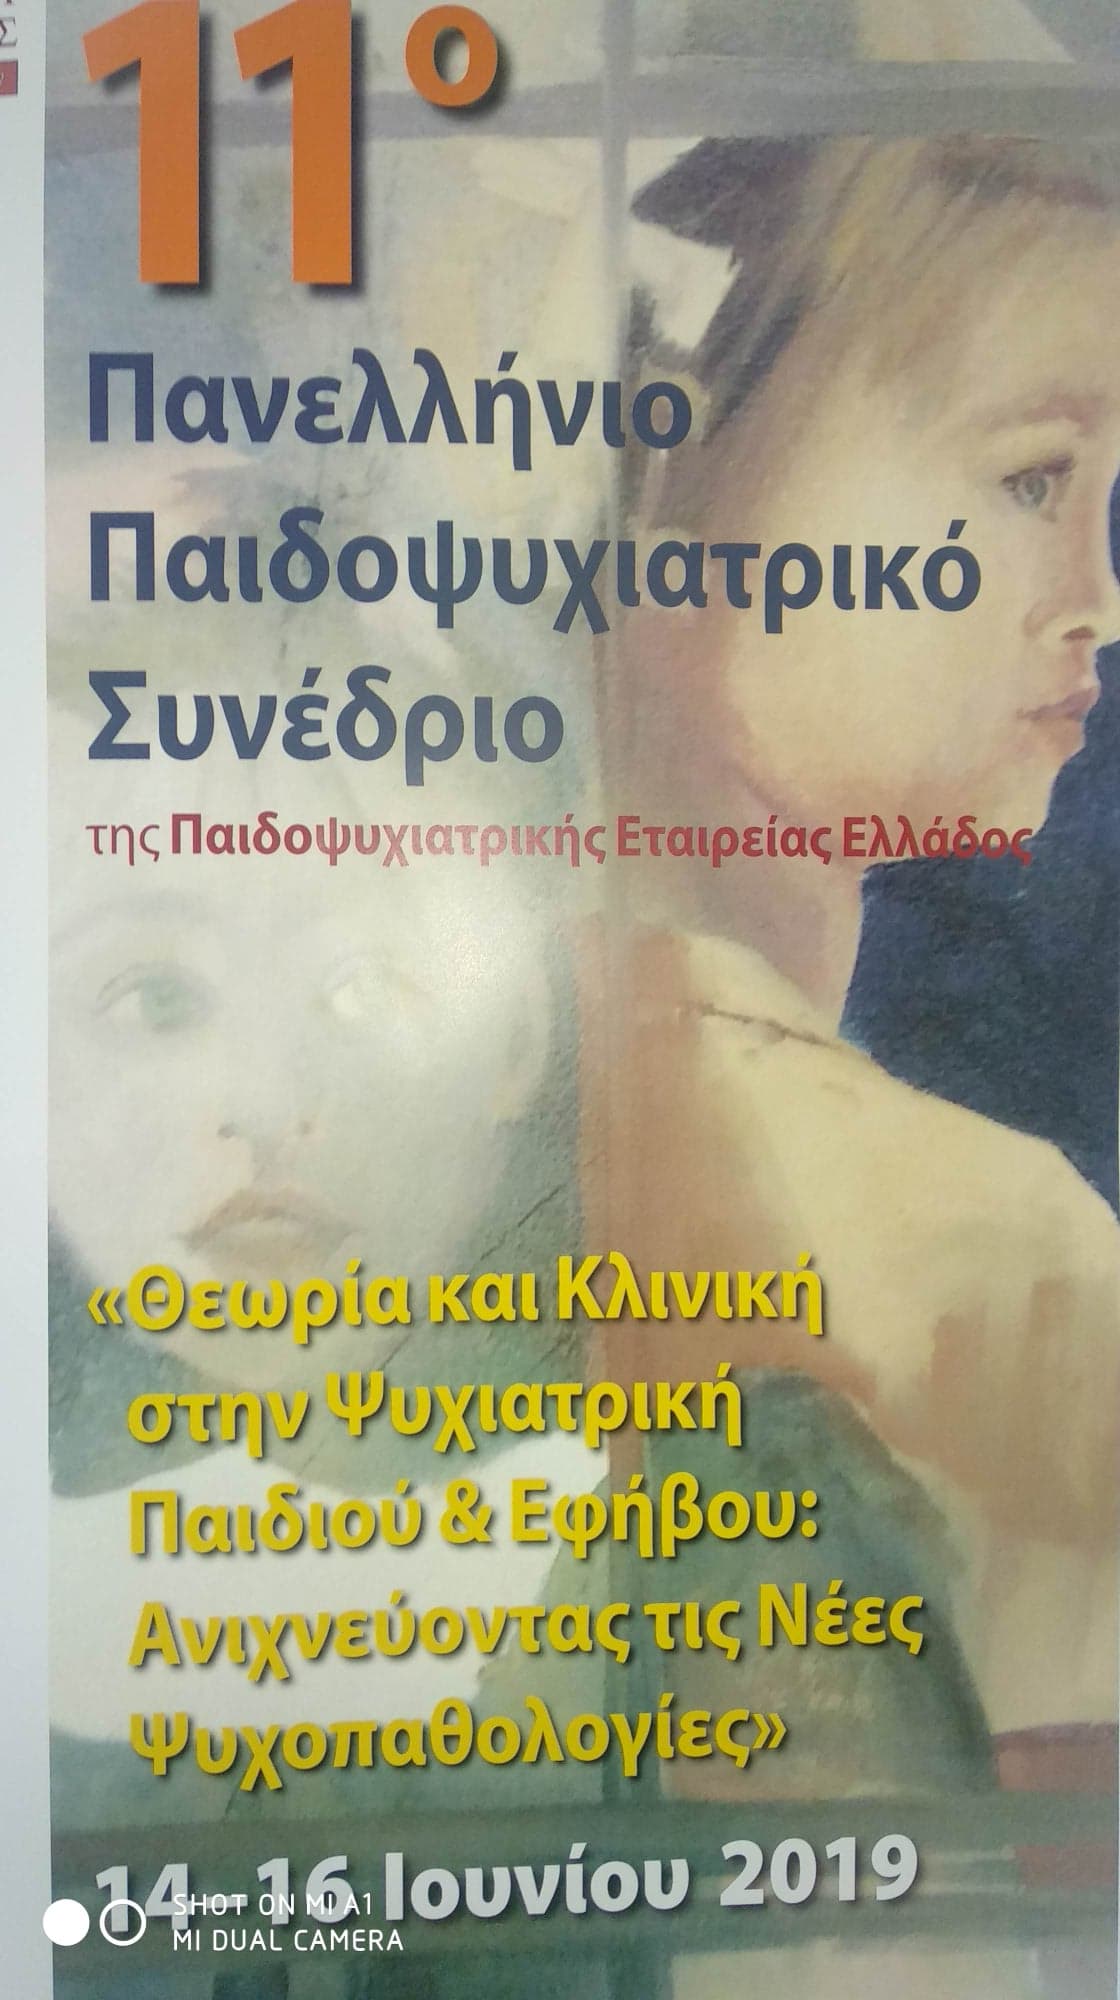 11ο Παιδοψυχιατρικό Συνέδριο στην Ιατρική Σχολή Αθηνών